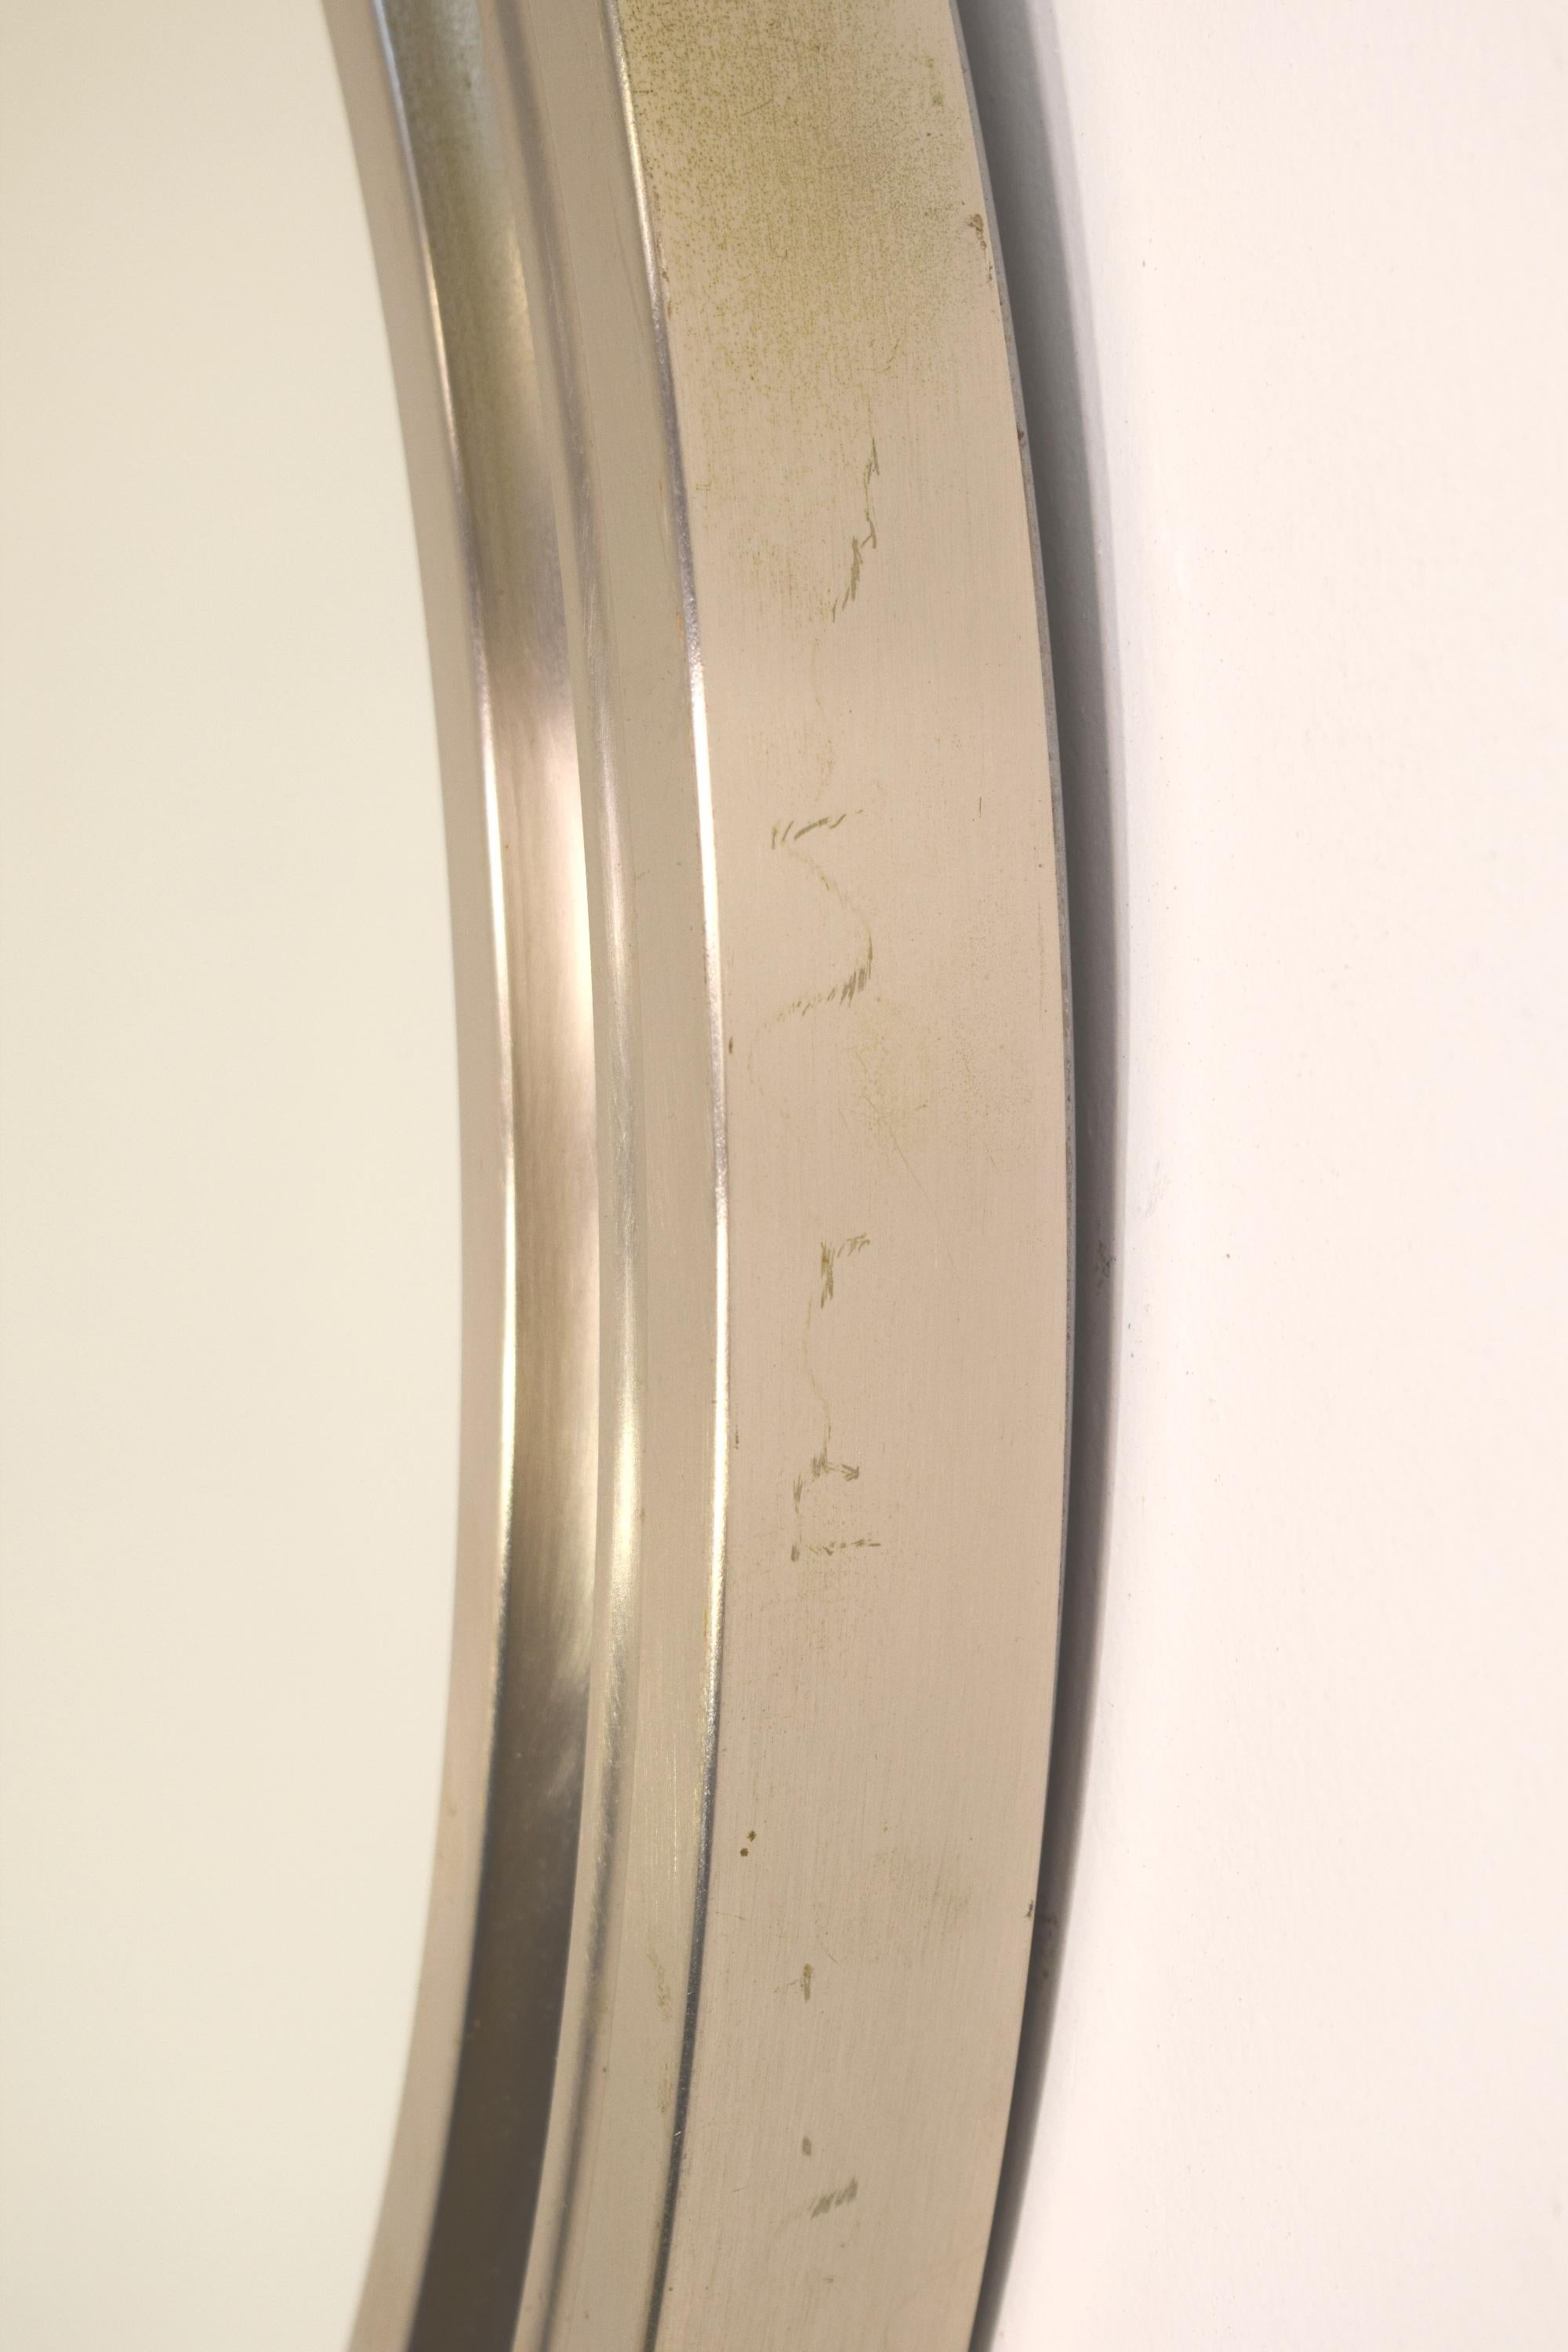 Italienischer runder Spiegel von Sergio Mazza, 1960er Jahre.
Abmessungen: H= 4 cm; D= 58 cm.